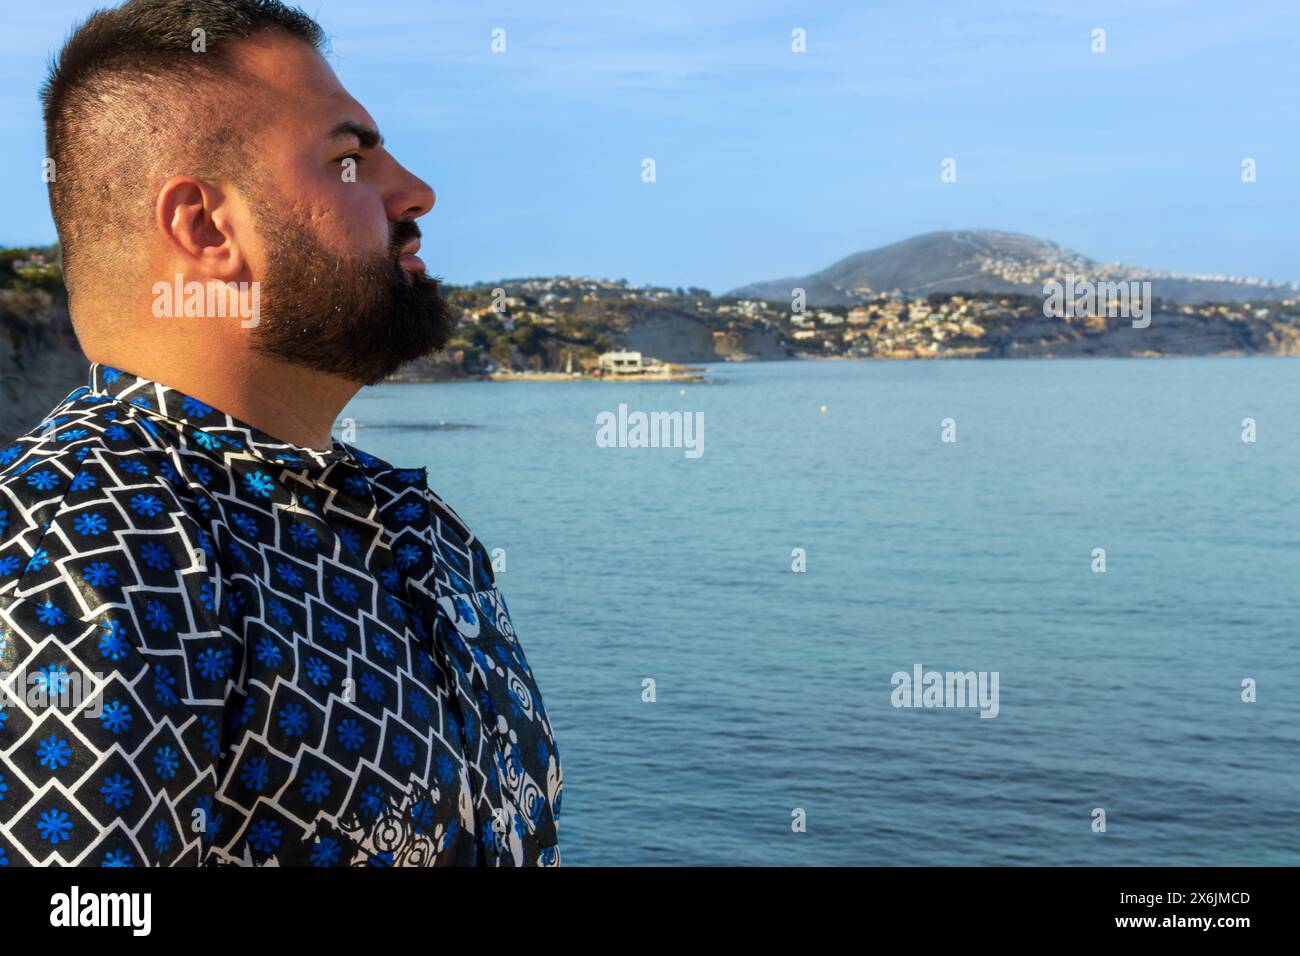 Dieses Porträt fängt einen 30-jährigen Mann ein, der am Meer steht, und sein Blick reflektiert ein Gefühl der Ruhe und der Introspektion. Stockfoto